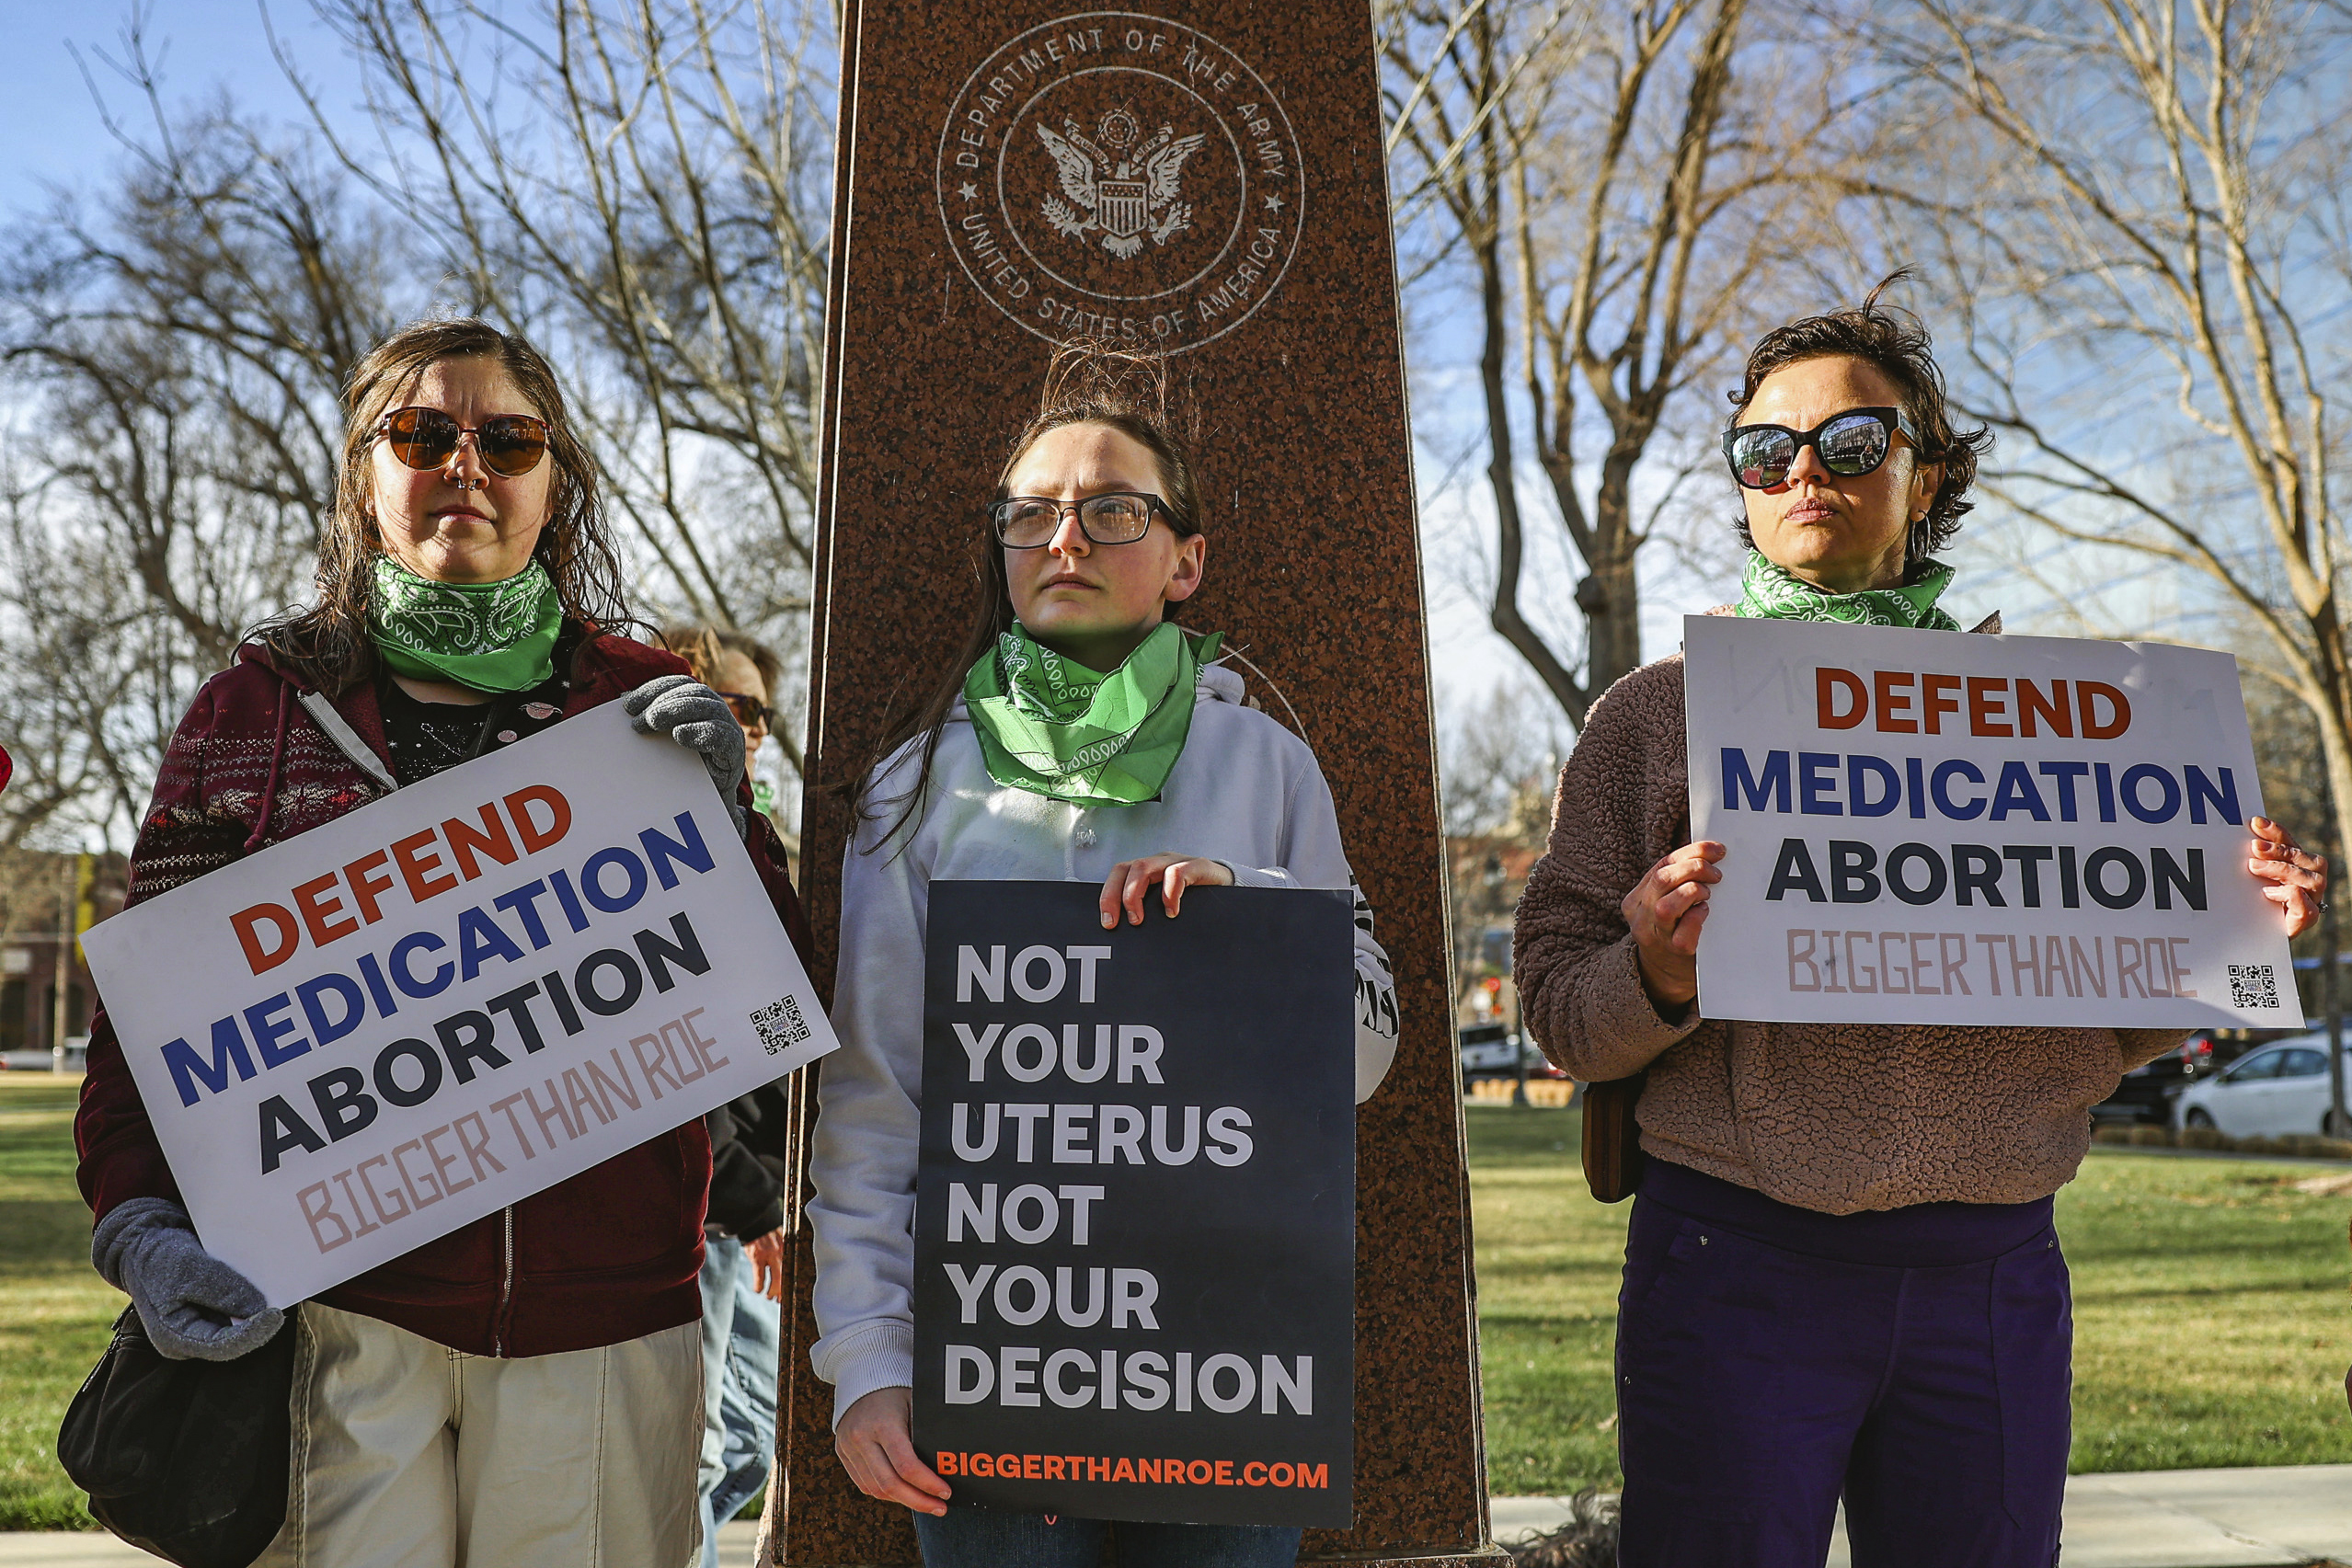 ΗΠΑ: Στο Ανώτατο Δικαστήριο η κυβέρνηση για να διαφυλάξει την πρόσβαση στη φαρμακευτική άμβλωση